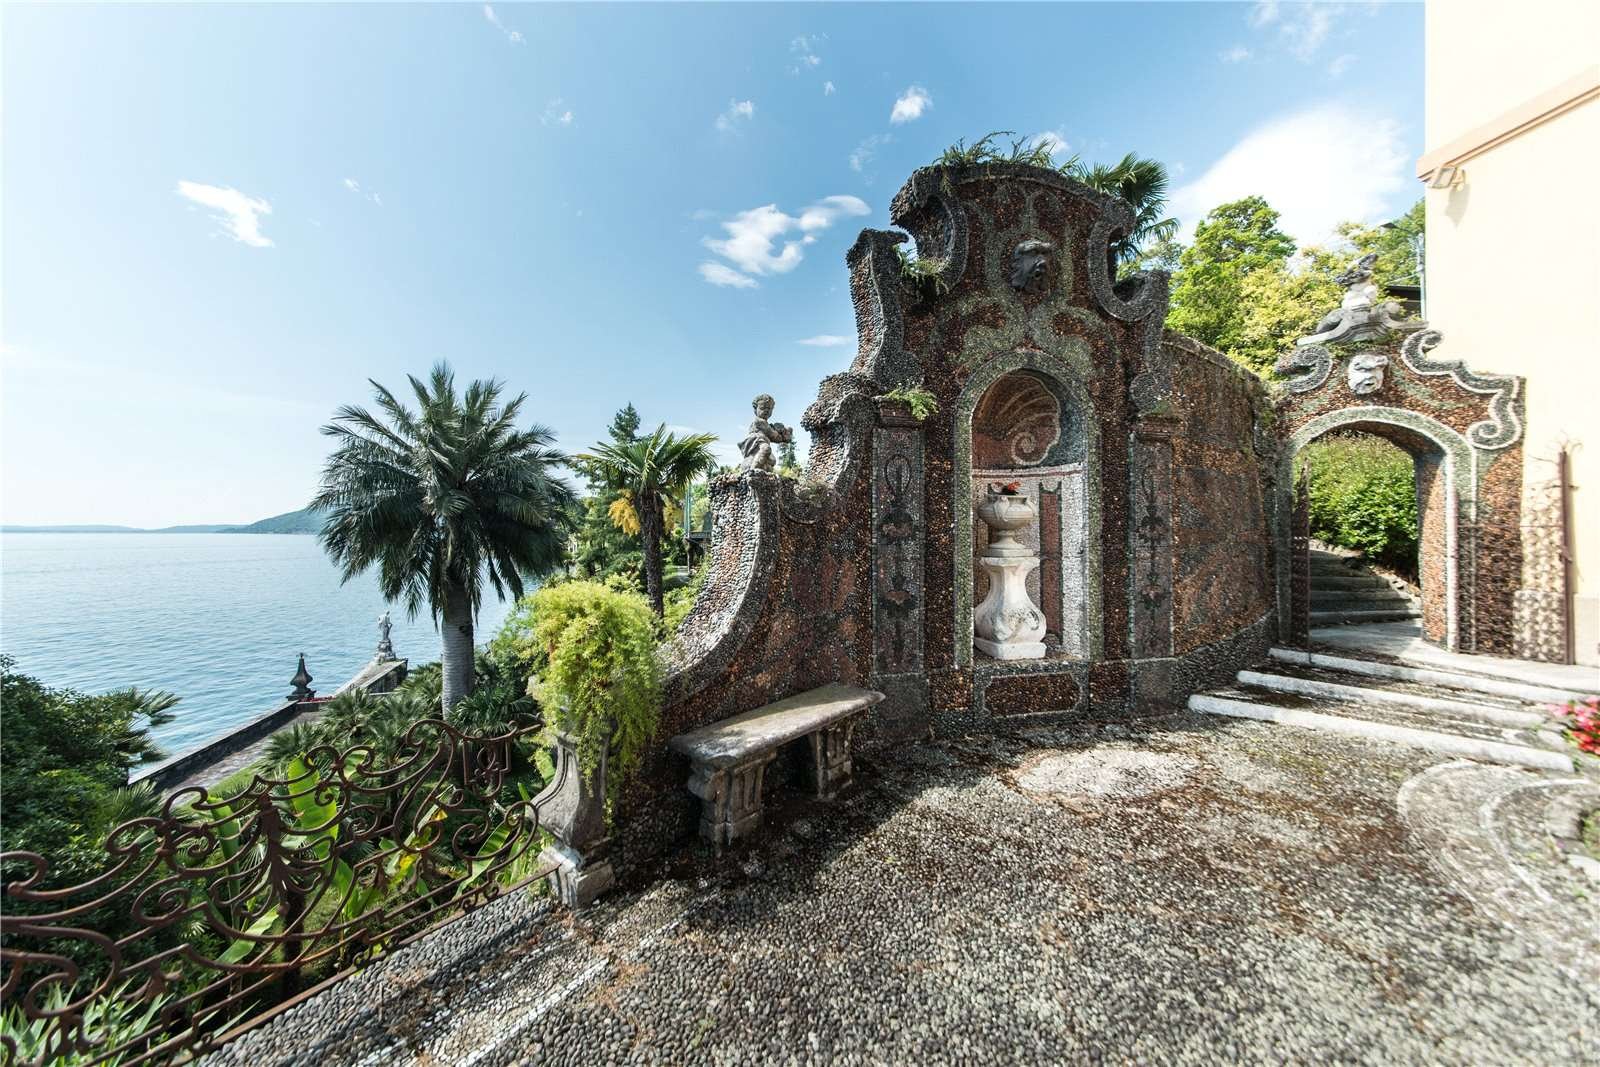 Francis YorkVilla L'Eremitaggio: Historic Villa On Lake Maggiore 12.jpg